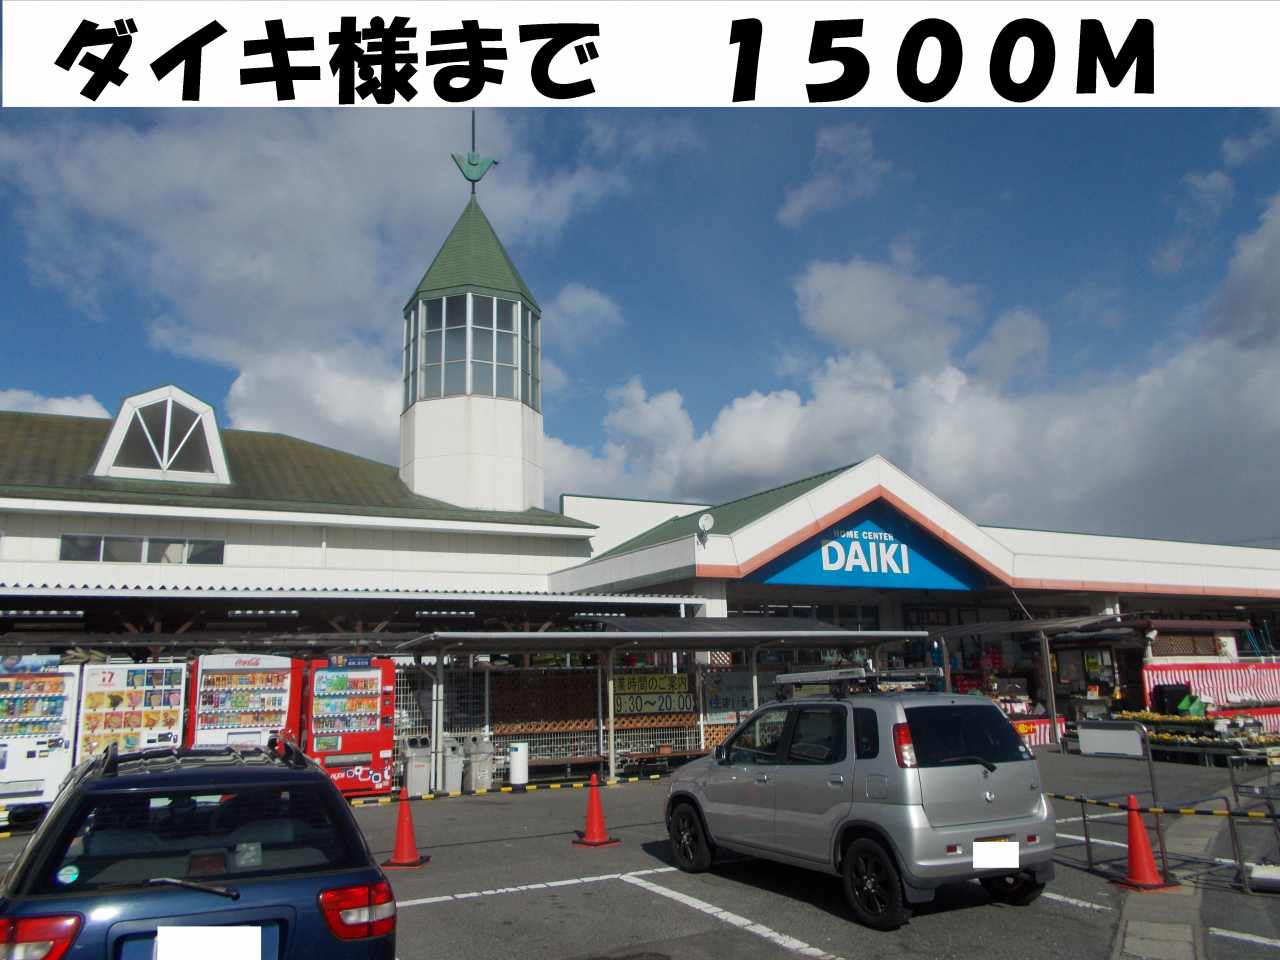 Home center. Daiki like to (home center) 1500m